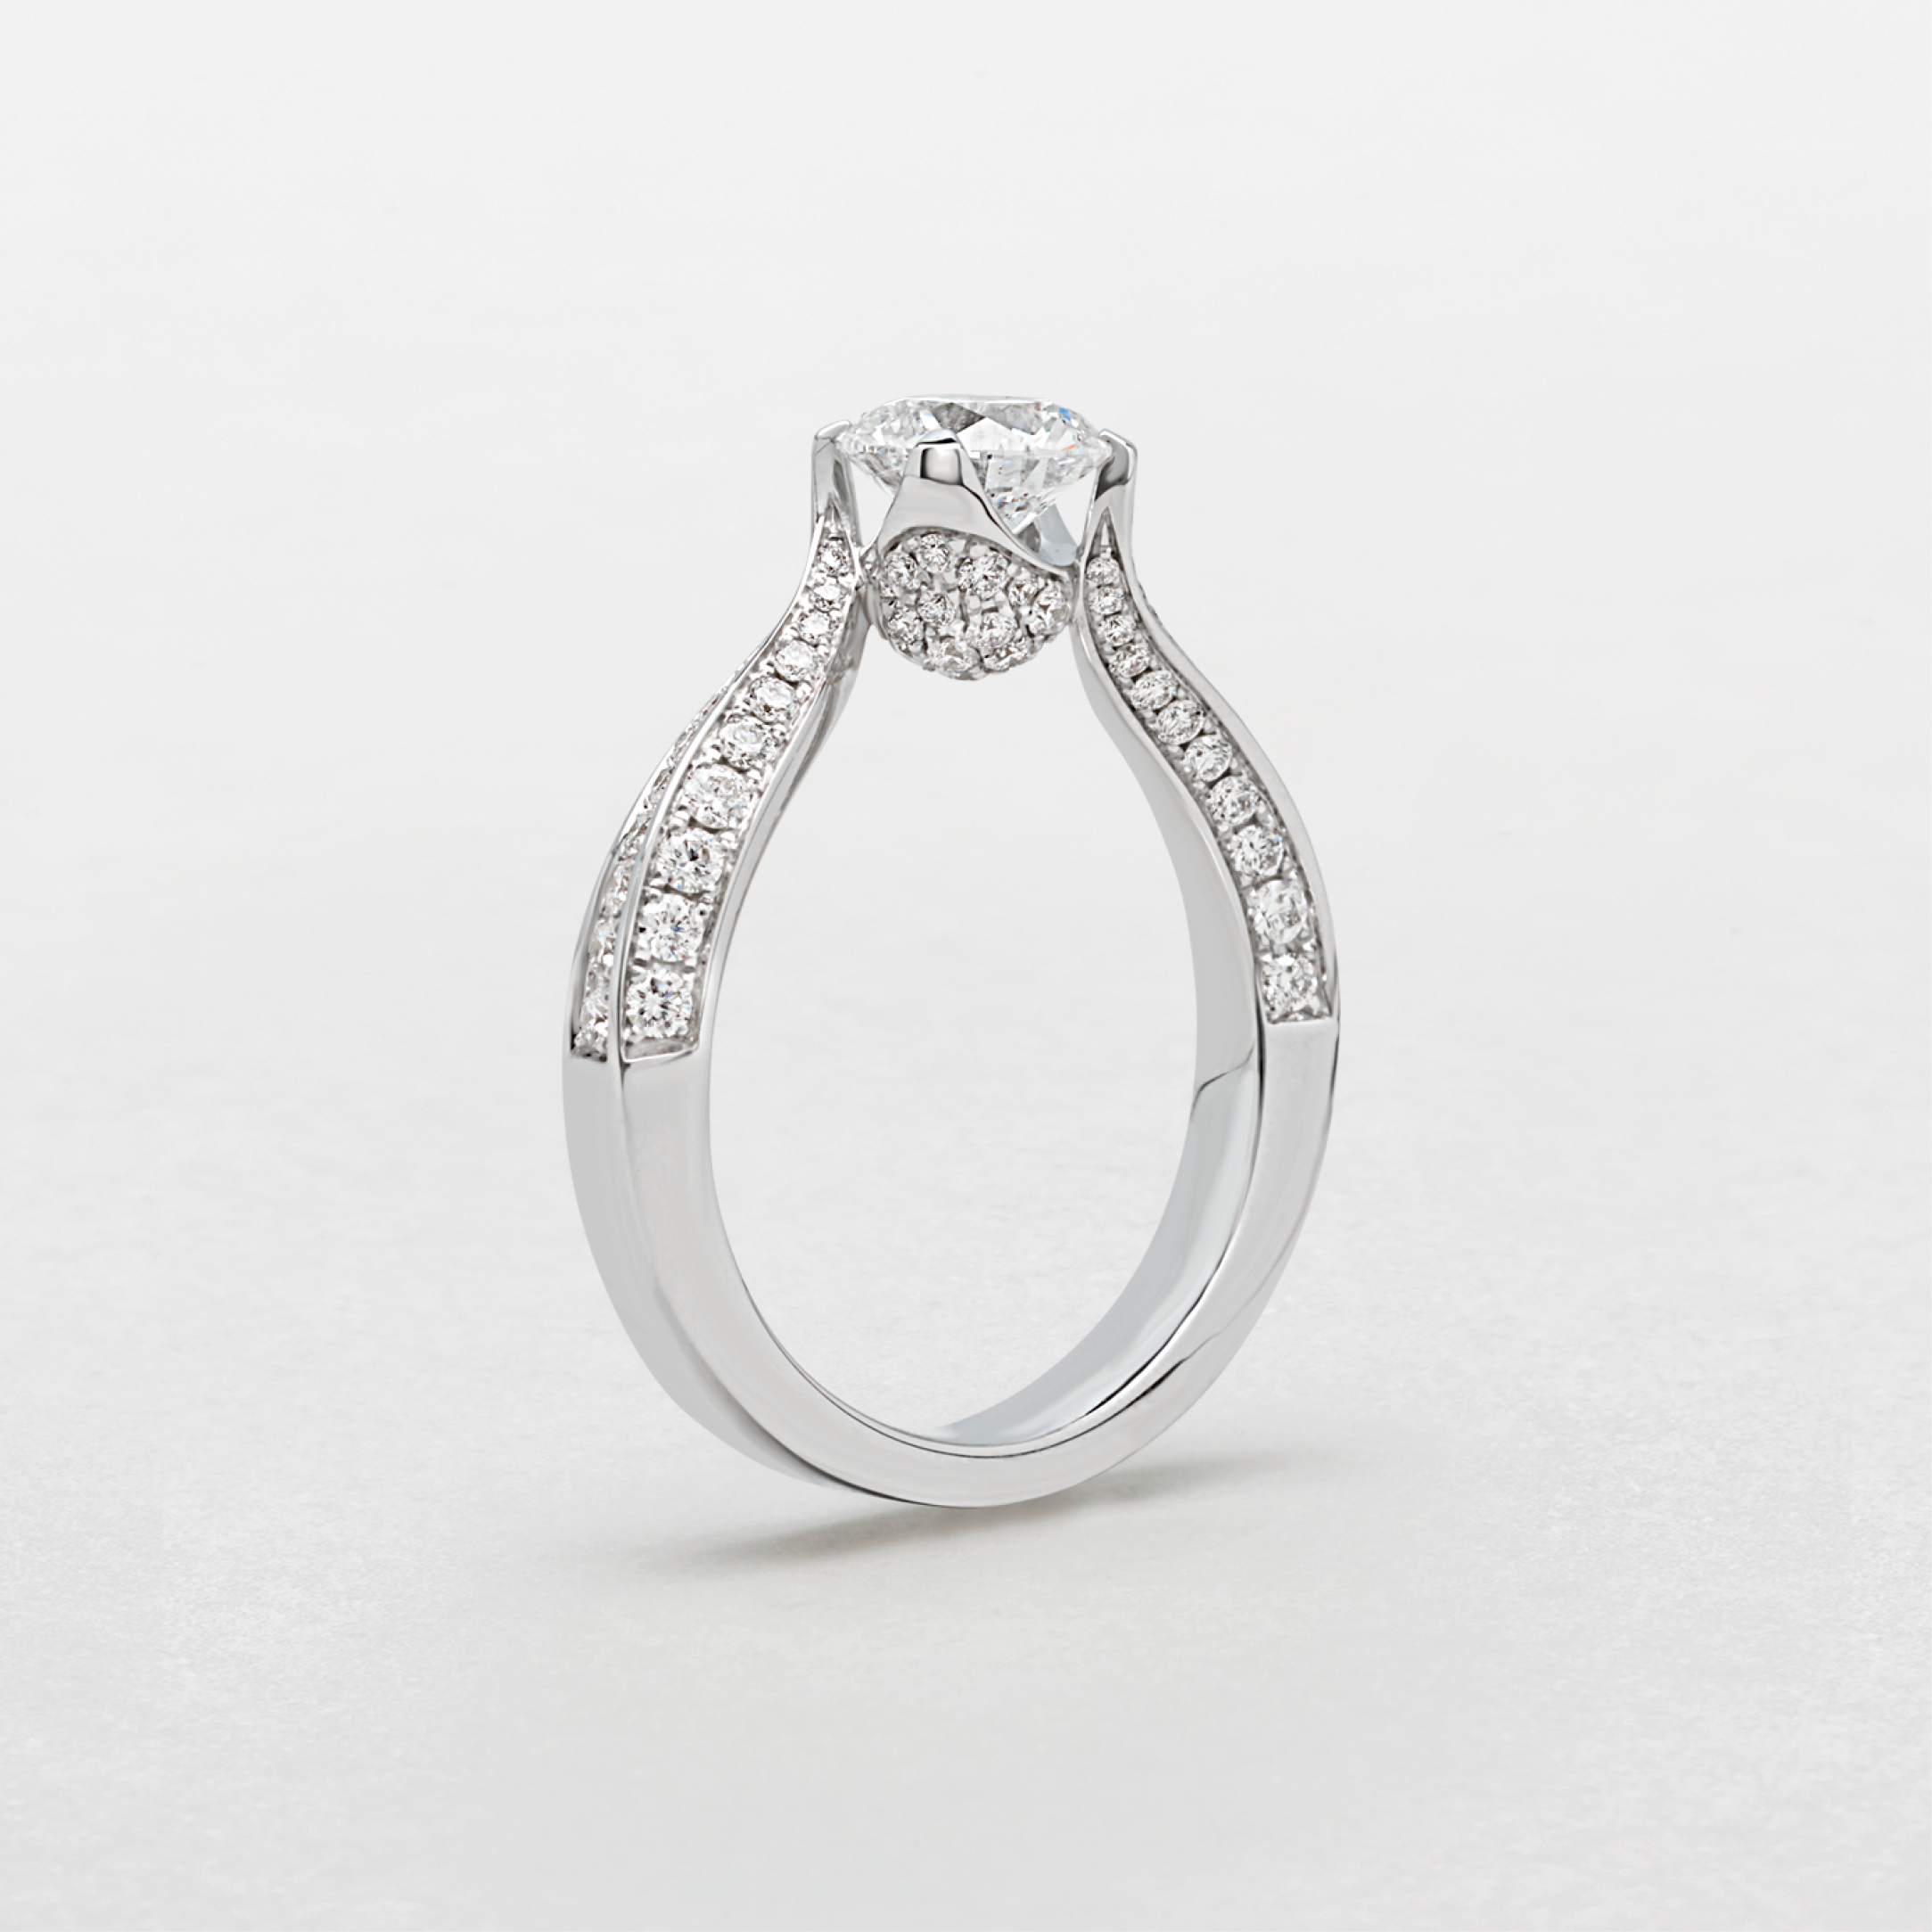 Visita il sito ufficiale e scopri gli anelli creati per lei. Gioielli in oro, diamanti, pietre di colore, perla, onice, kogolong e acquamarina